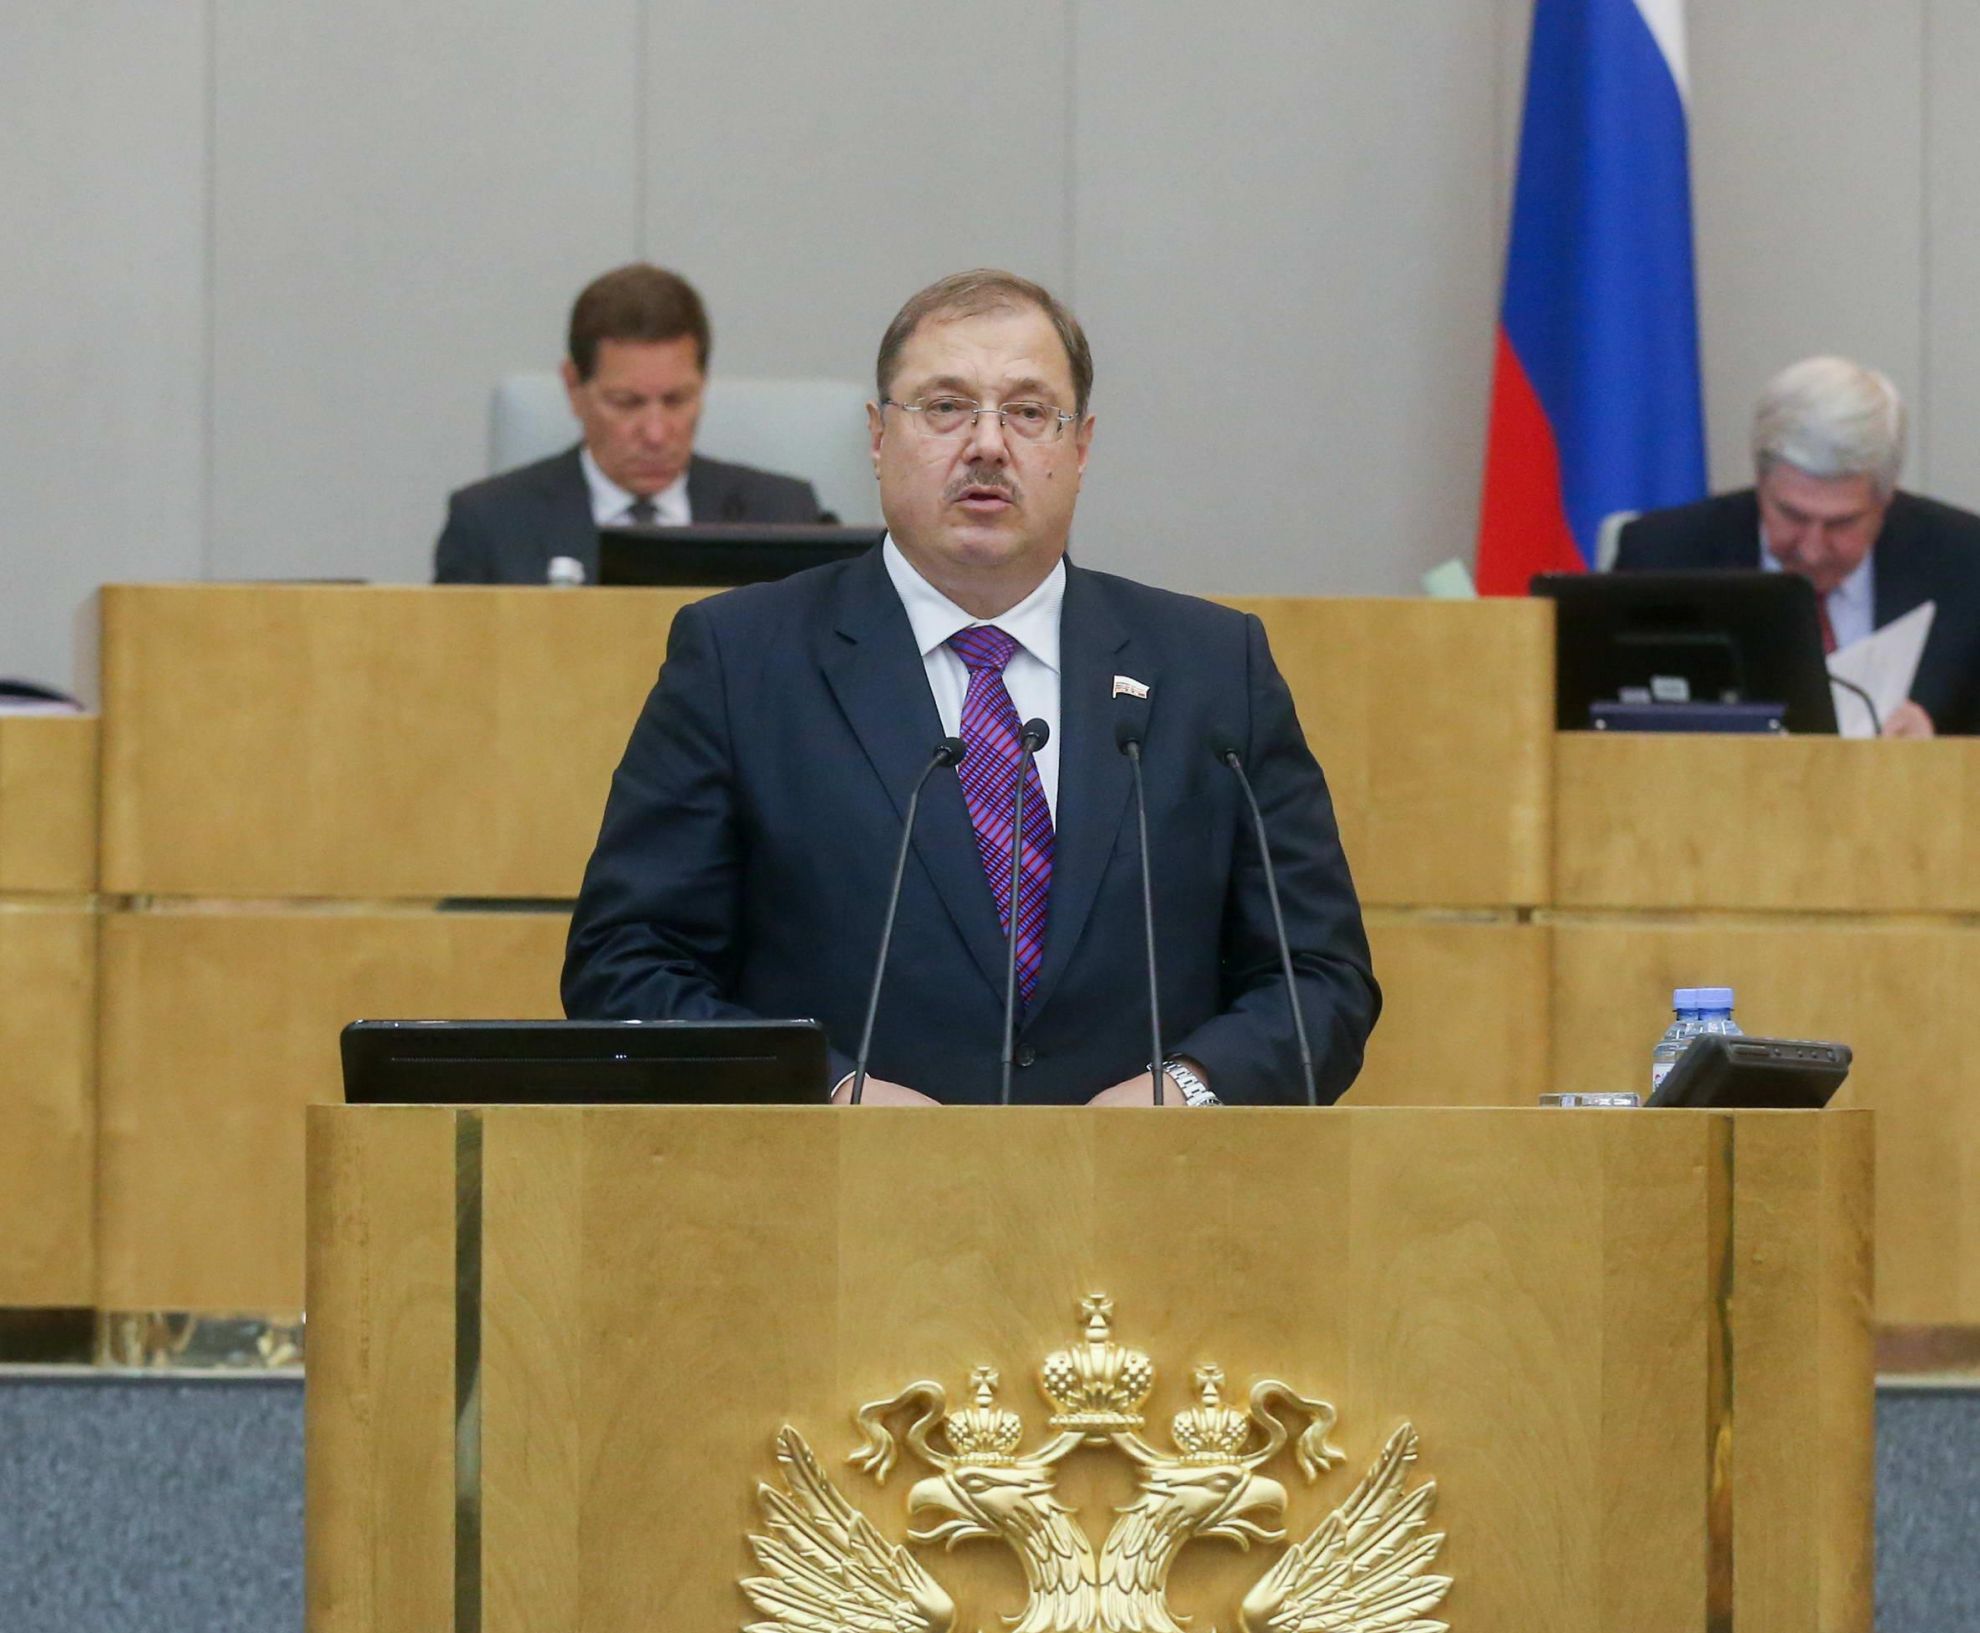 Борис Пайкин упрекнул Банк России в недостаточном содействии экономическому росту  